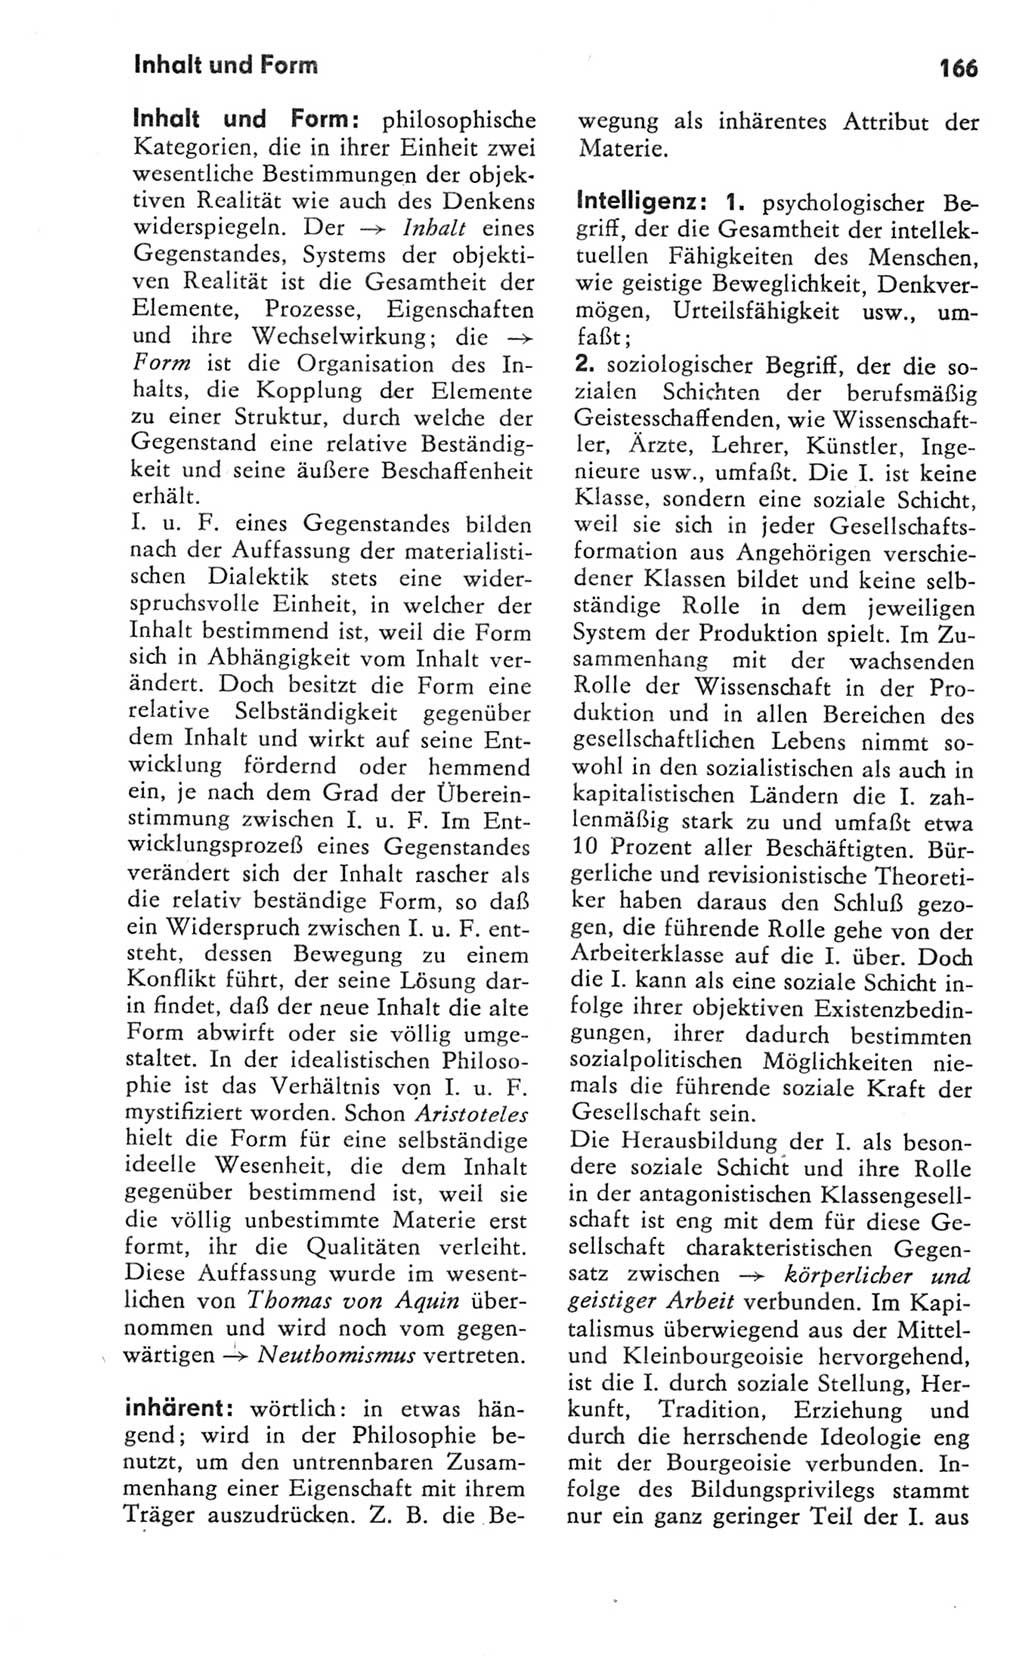 Kleines Wörterbuch der marxistisch-leninistischen Philosophie [Deutsche Demokratische Republik (DDR)] 1981, Seite 166 (Kl. Wb. ML Phil. DDR 1981, S. 166)